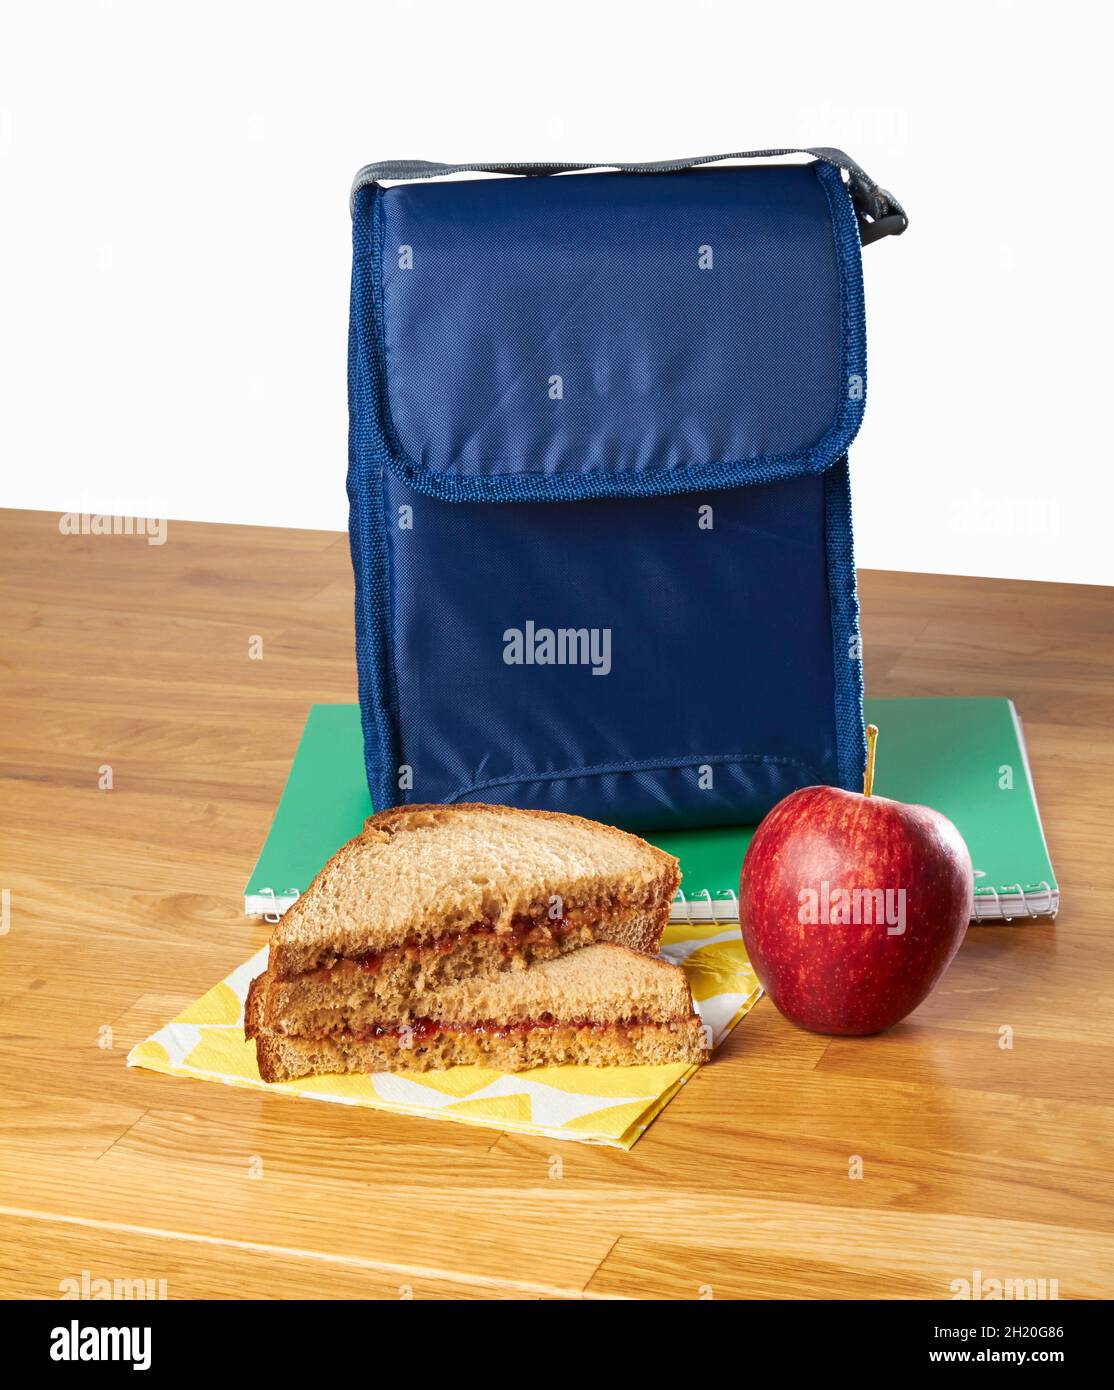 Un sándwich de mantequilla de maní y una manzana como aperitivo con una bolsa de almuerzo Foto de stock